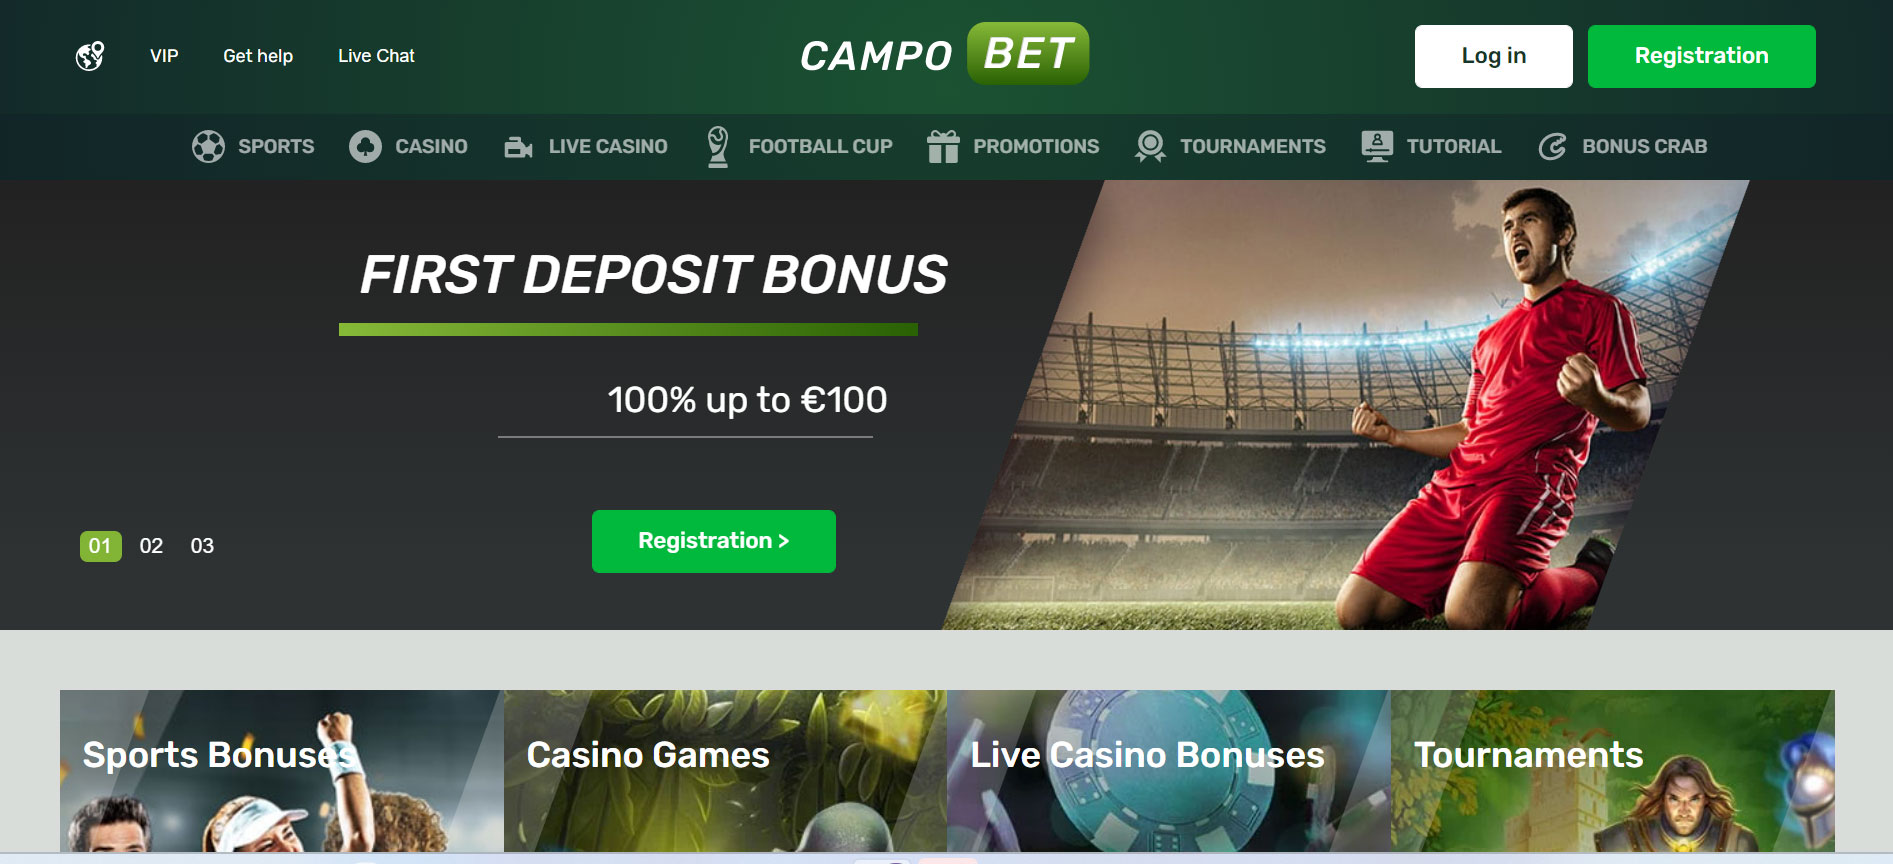 CampoBet Casino Home Screen